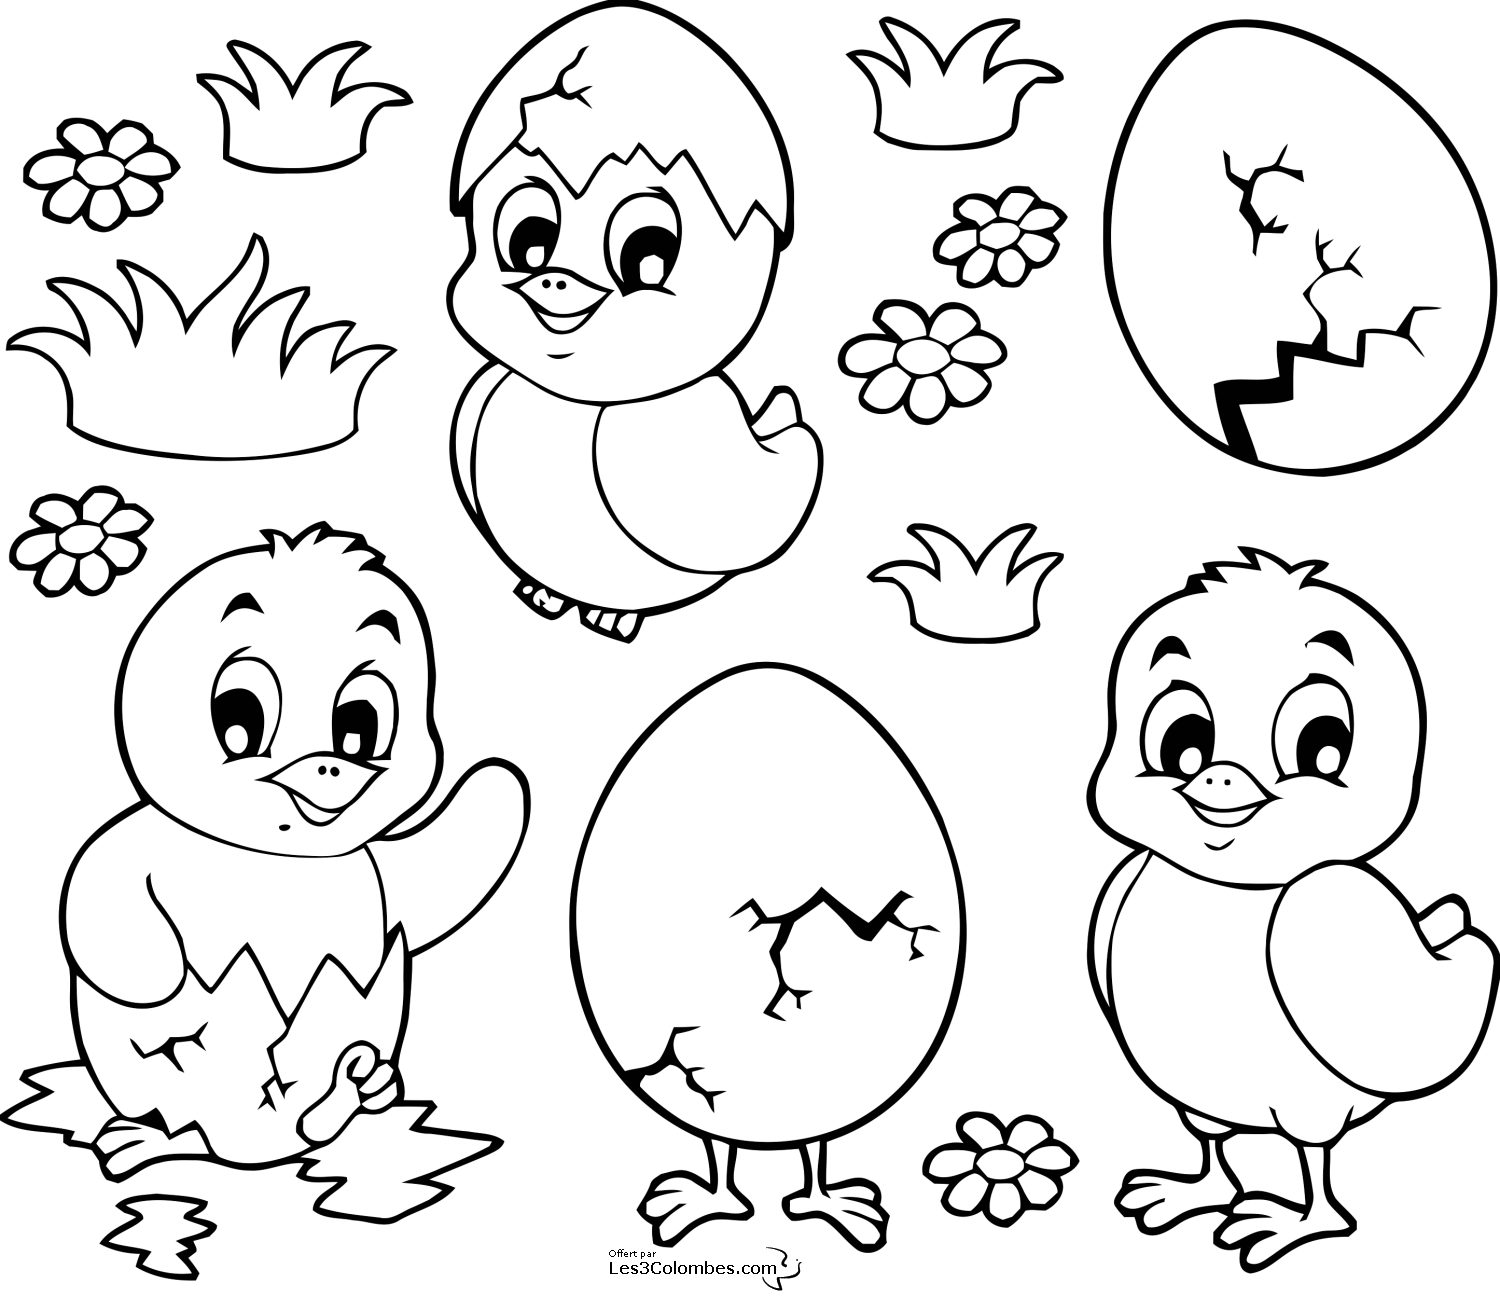 Tuyển tập tranh tô màu con gà đẹp nhất dành cho các bé